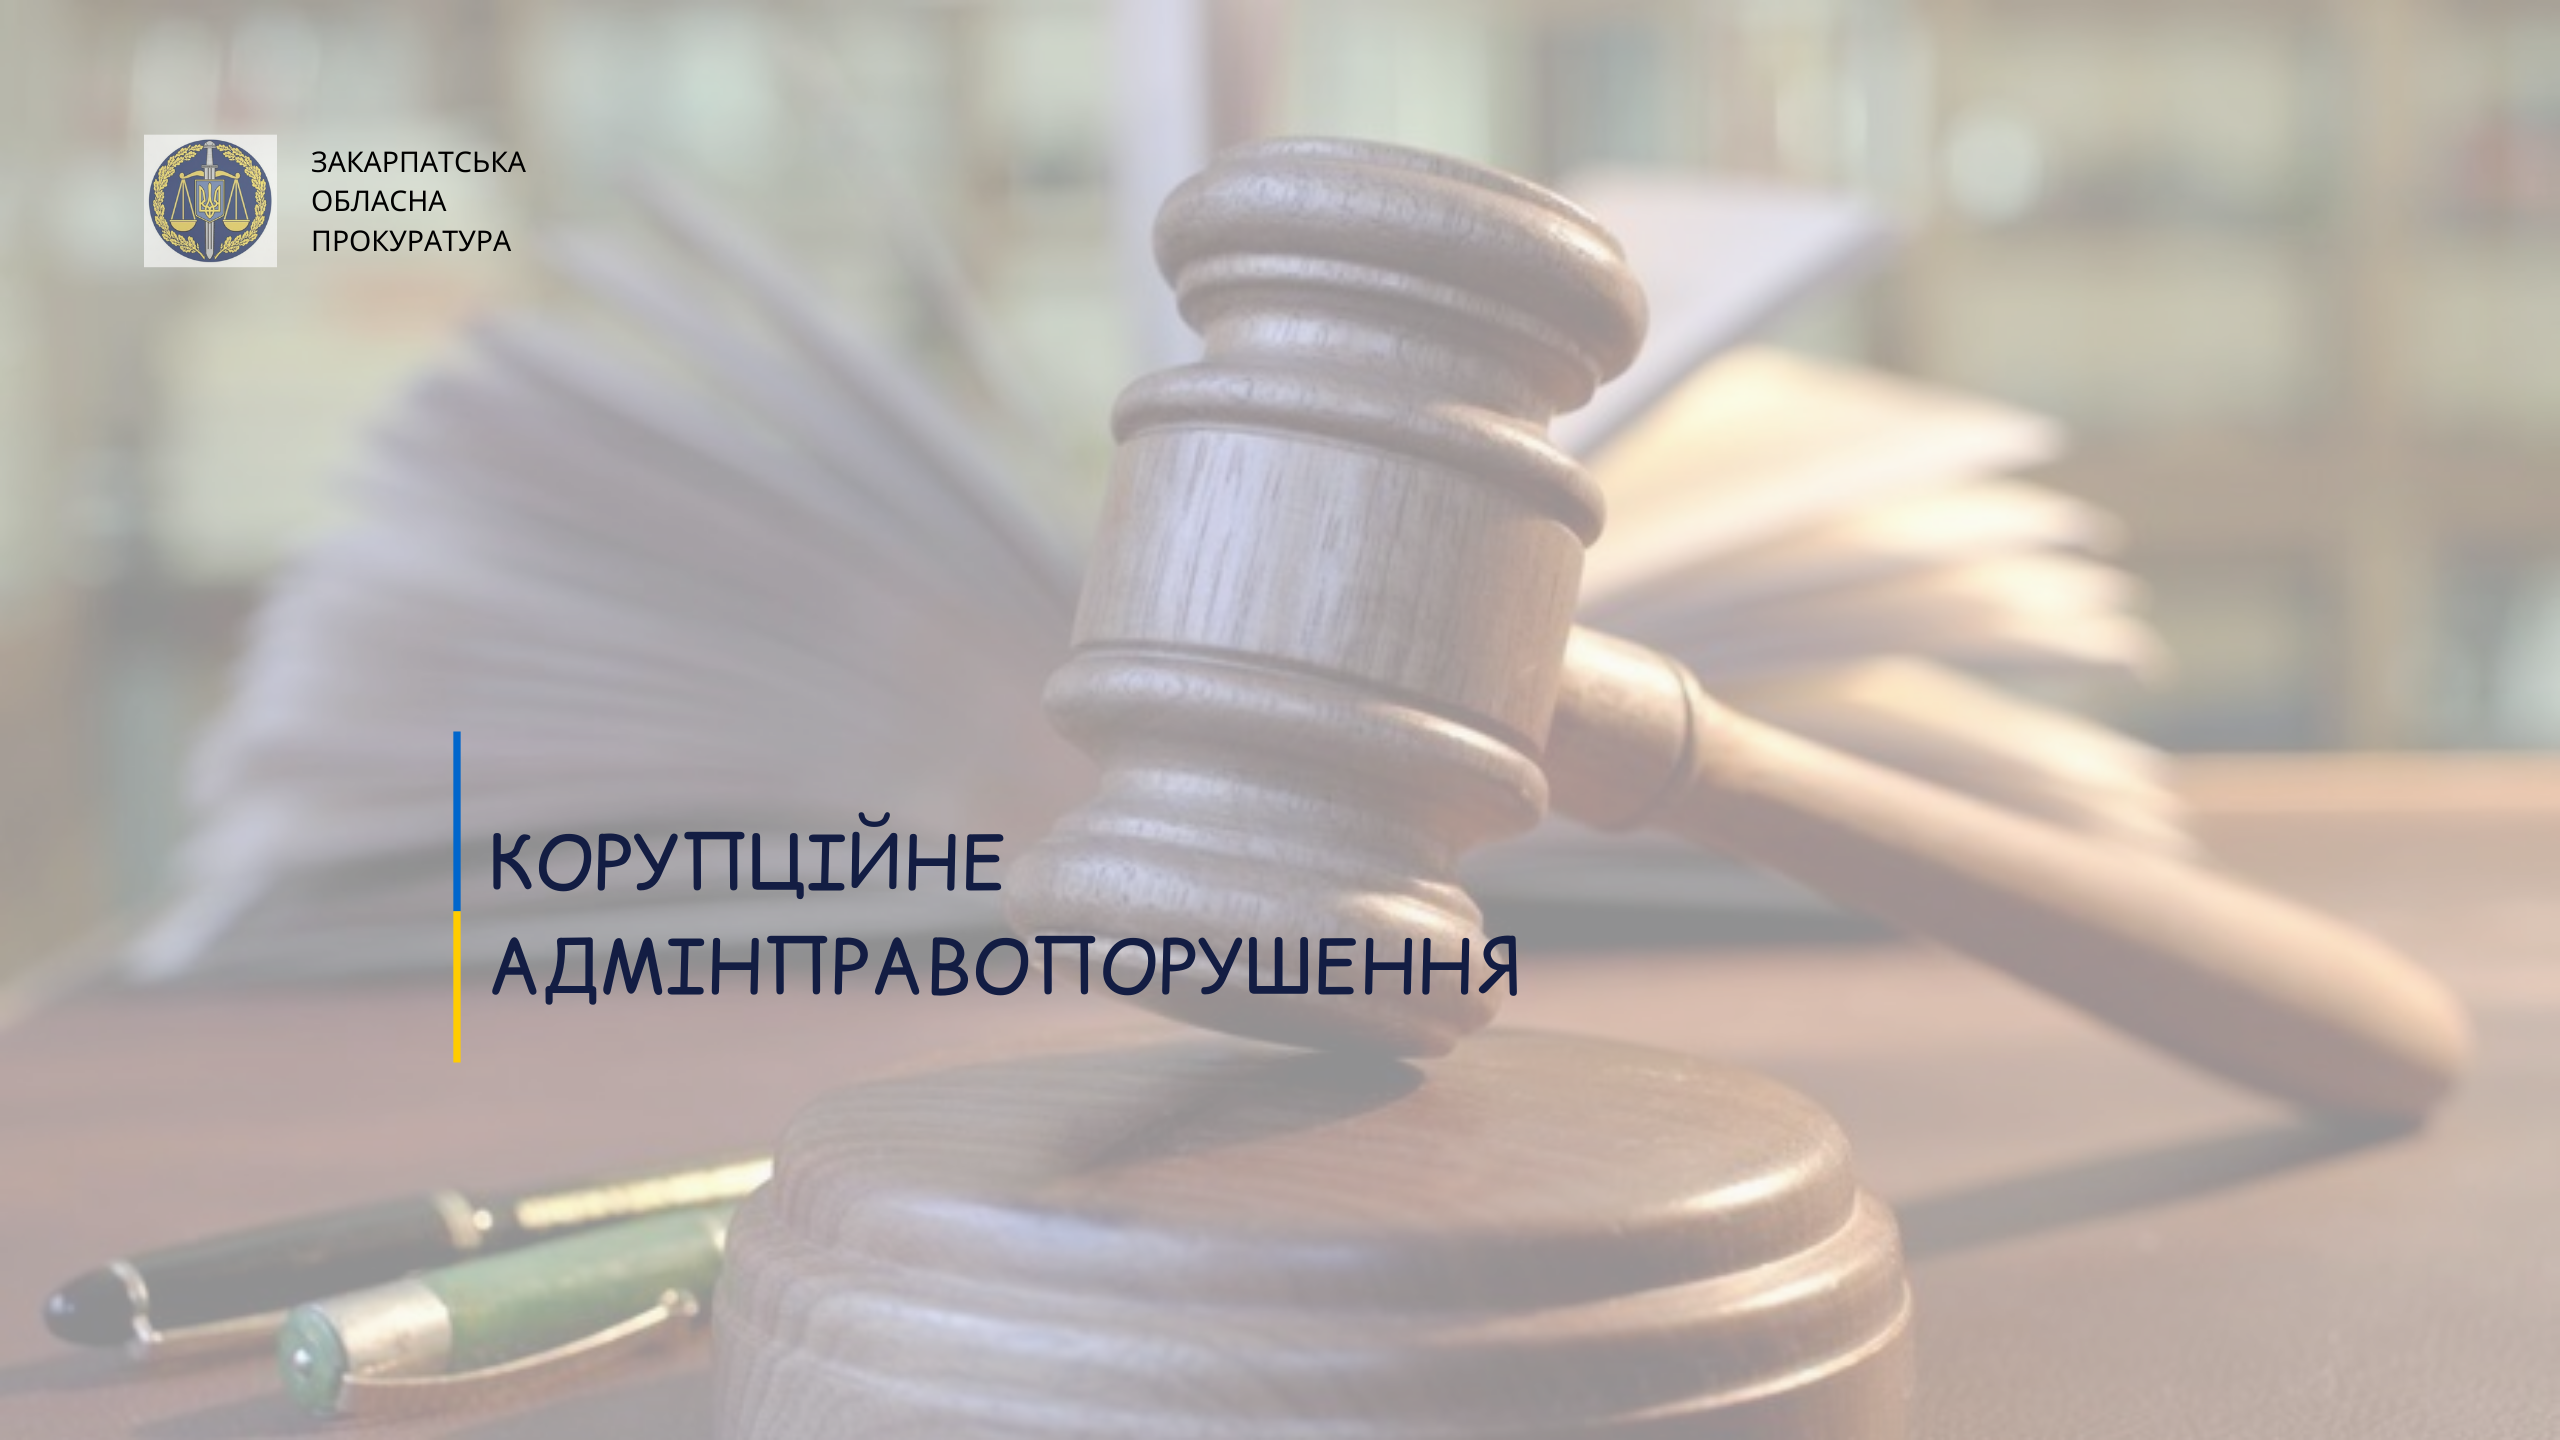 За вчинене корупційне правопорушення головному воднику Берегівщини присудили штраф у розмірі 5100 грн